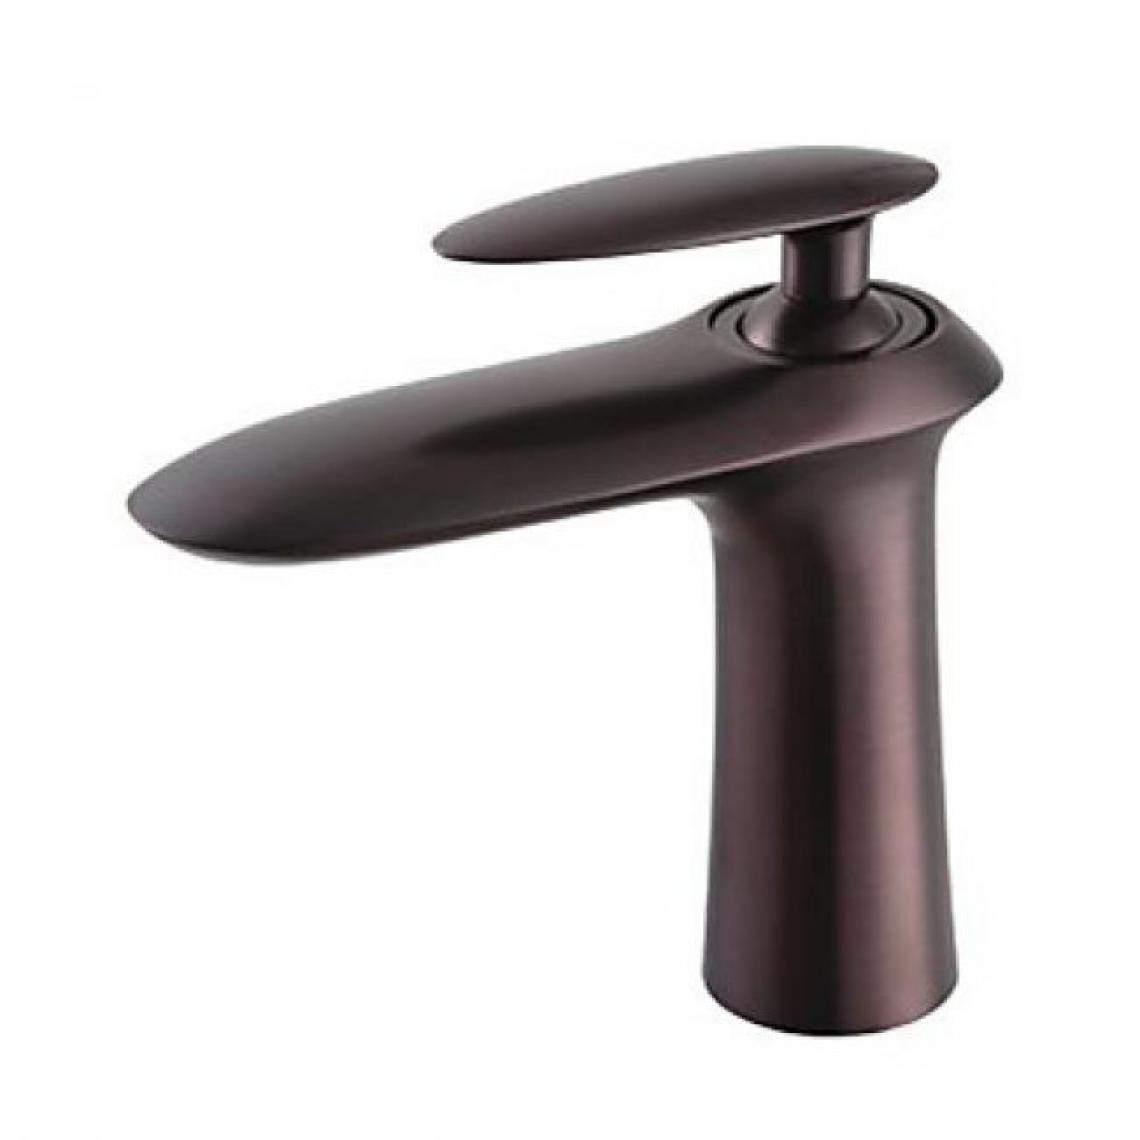 Lookshop - Robinet d'évier à design contemporain avec une finition en bronze huilé - Robinet de lavabo